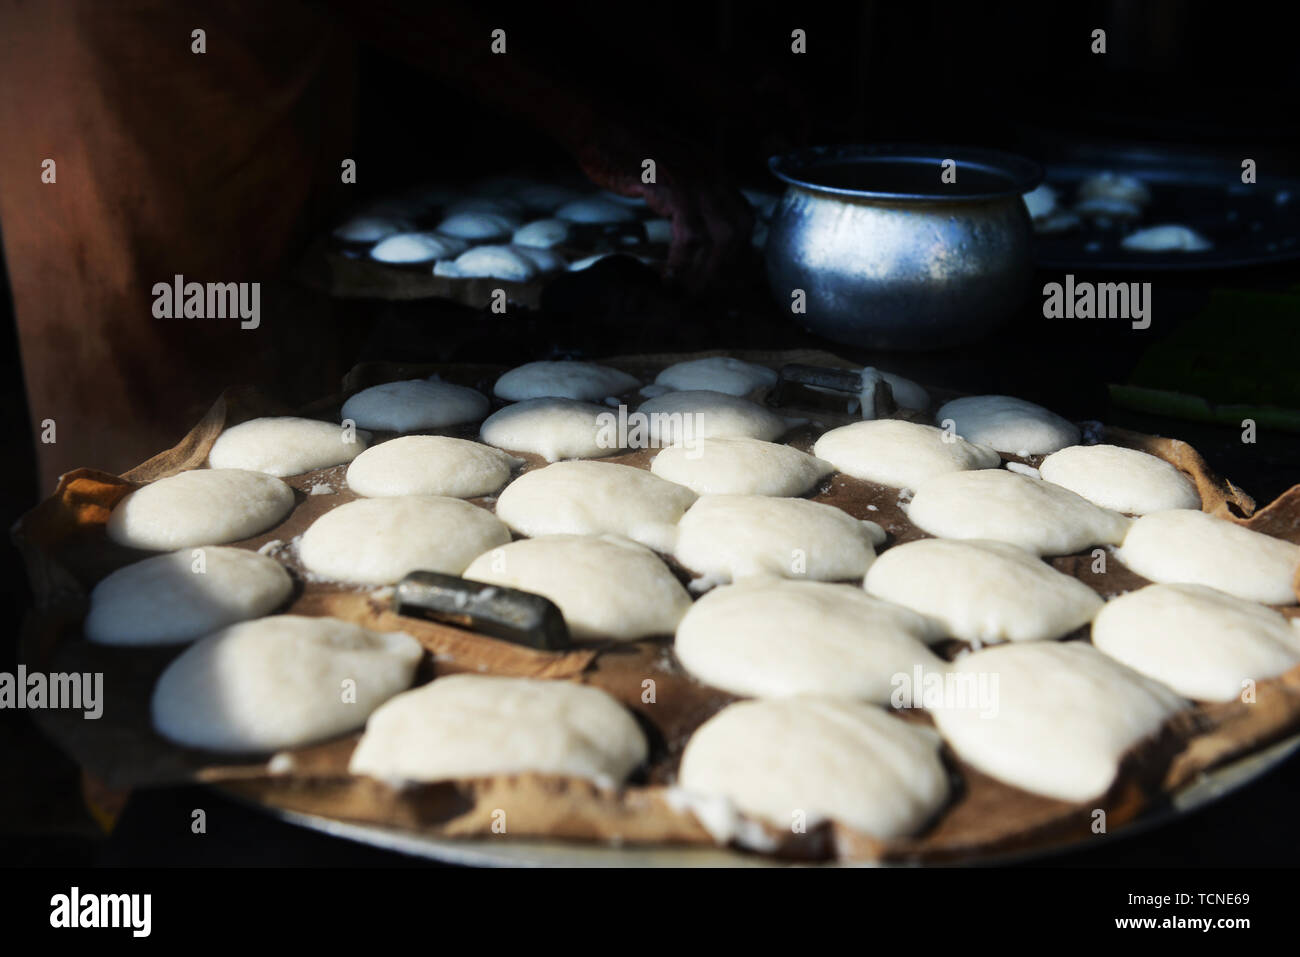 Idly ( savoury rice cake ) preparation. Stock Photo